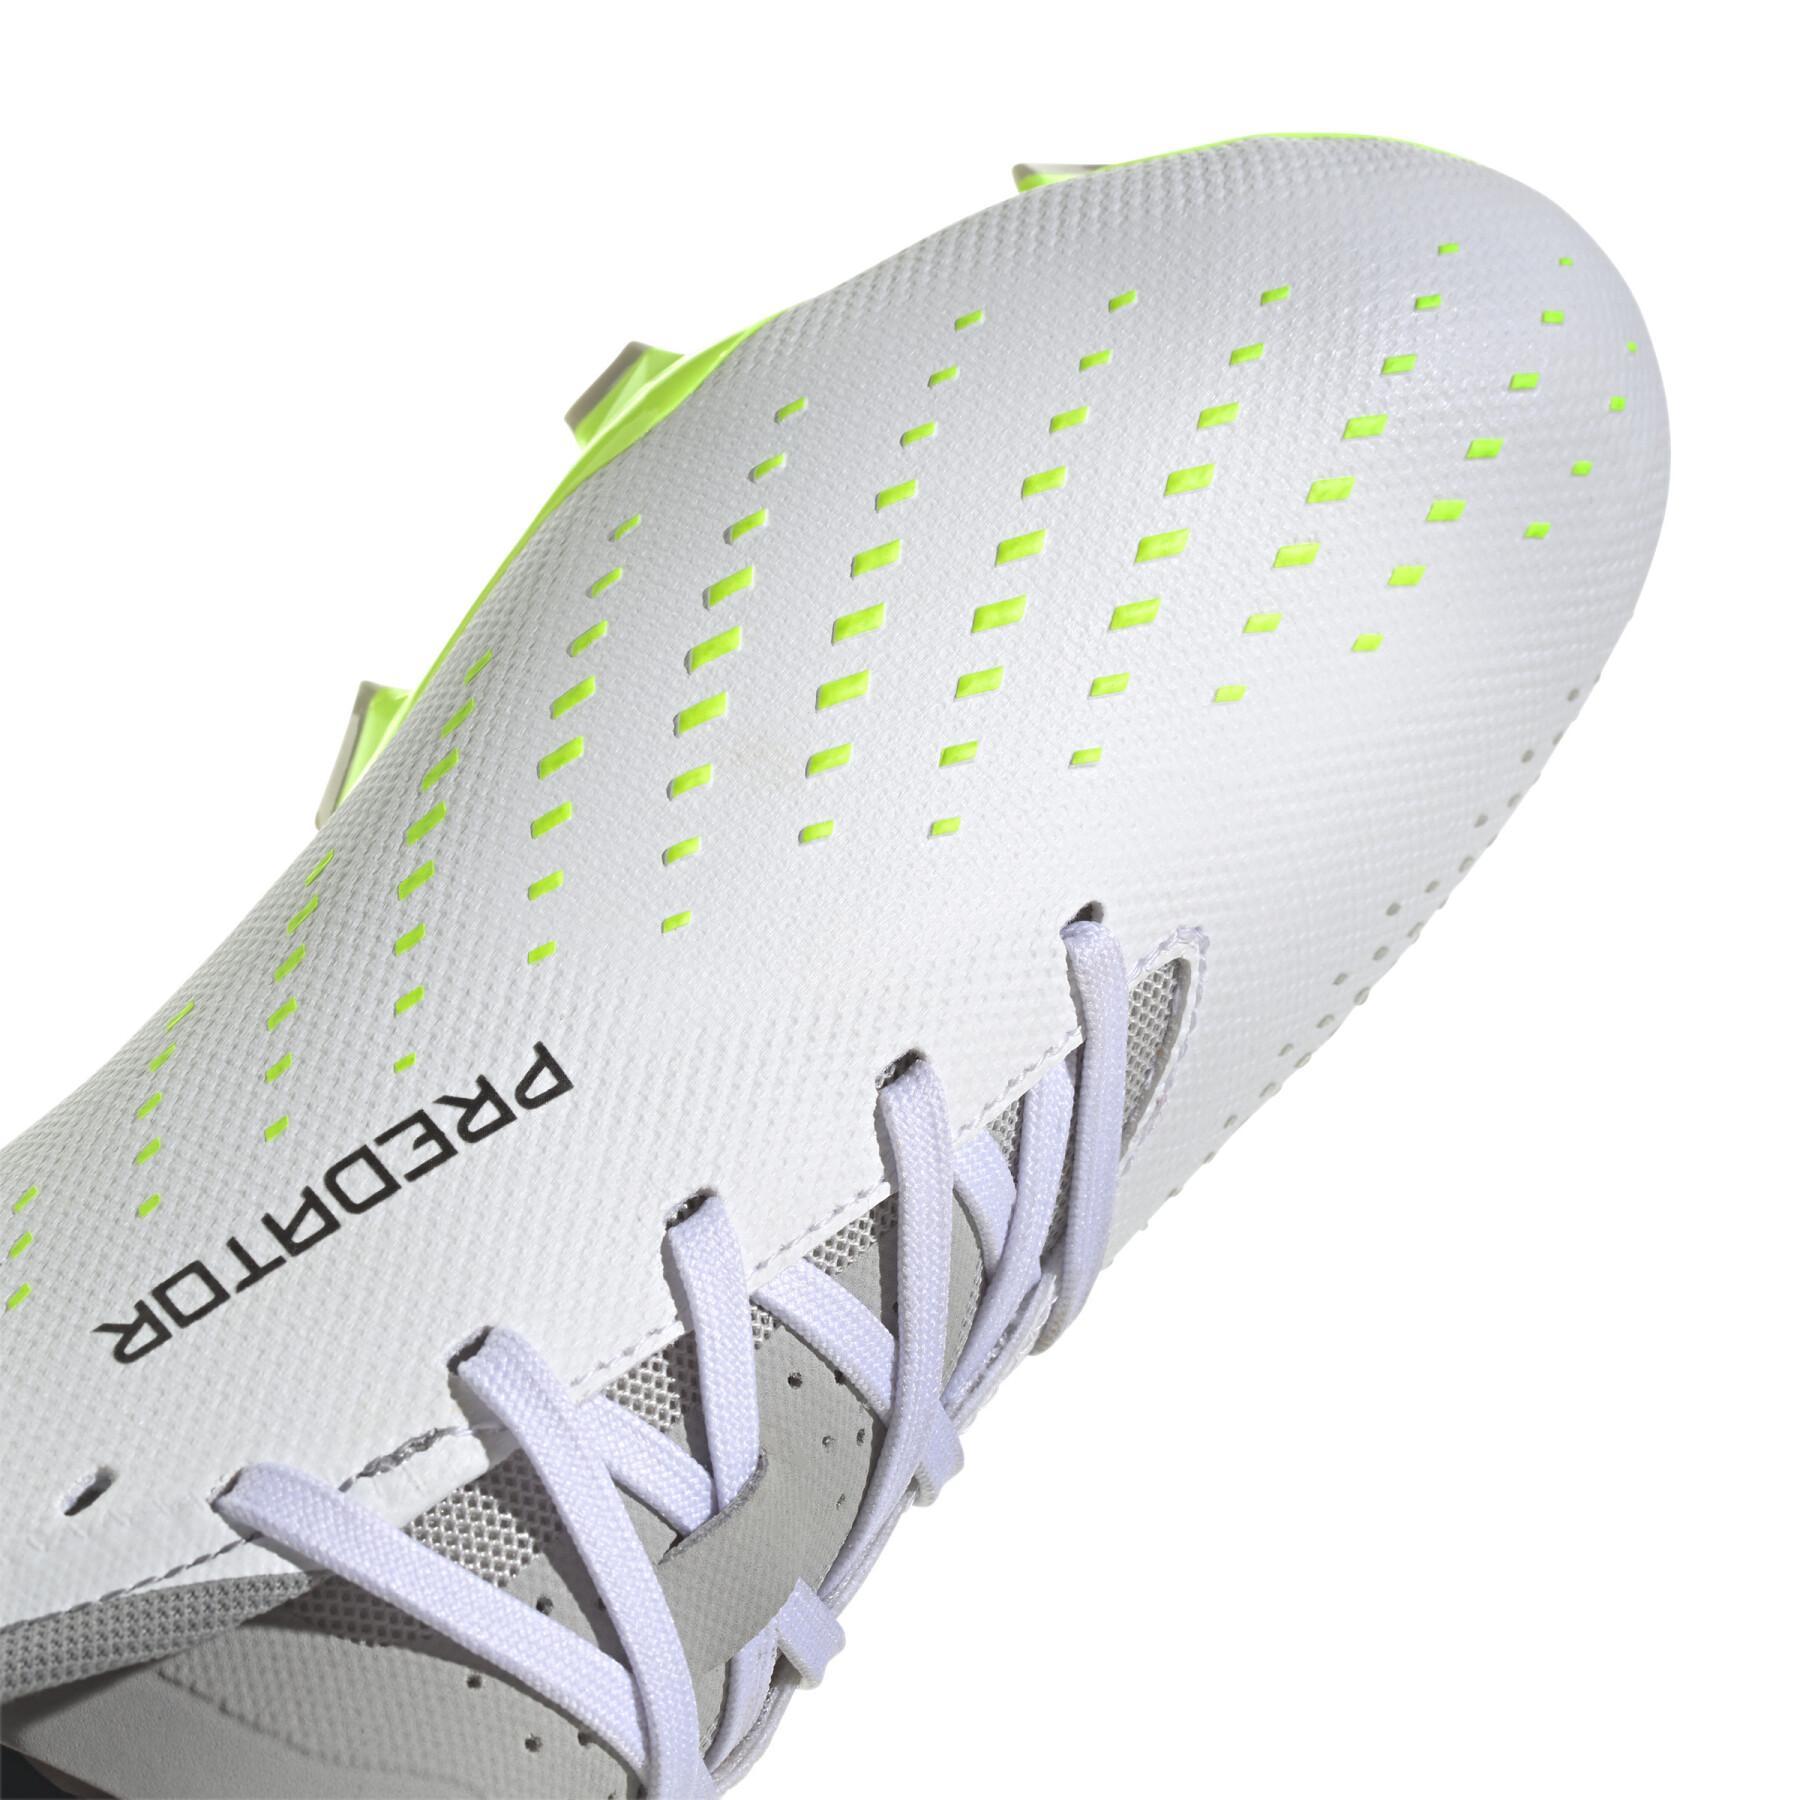 Sapatos de futebol adidas Predator Accuracy.3 L FG